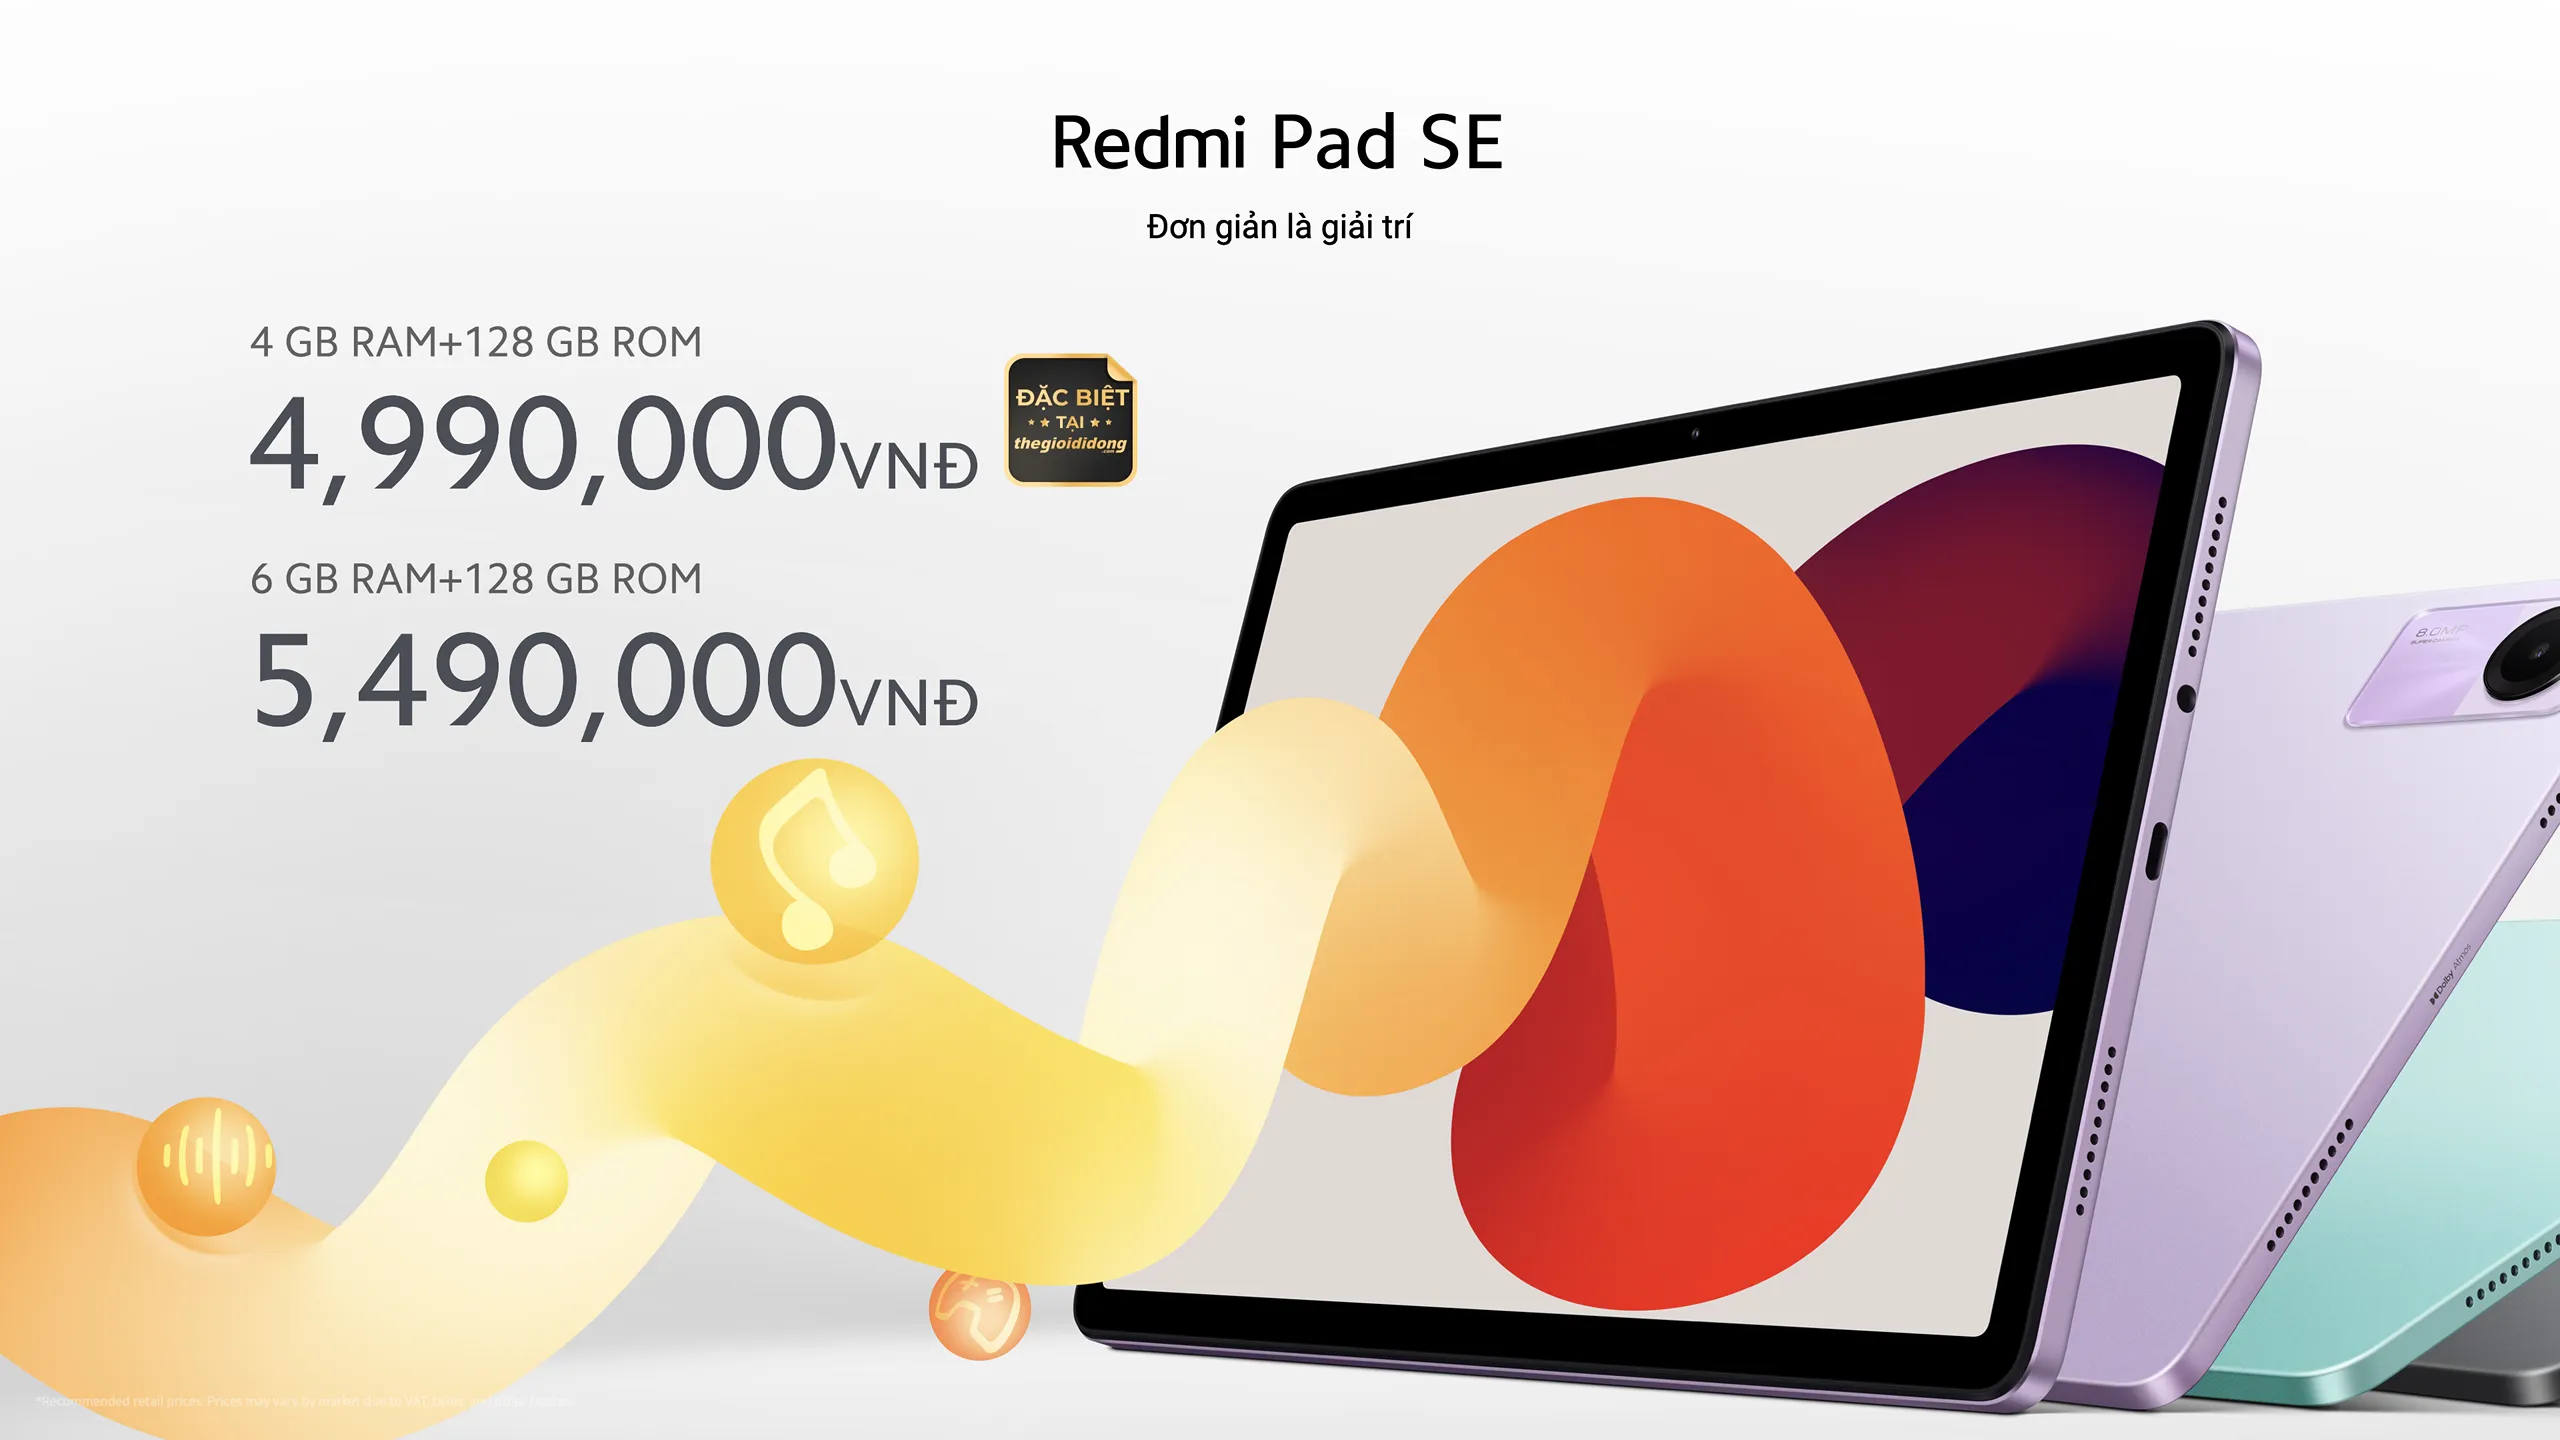 Xiaomi chính thức ra mắt Redmi Pad SE giá chỉ từ 4.99 triệu đồng